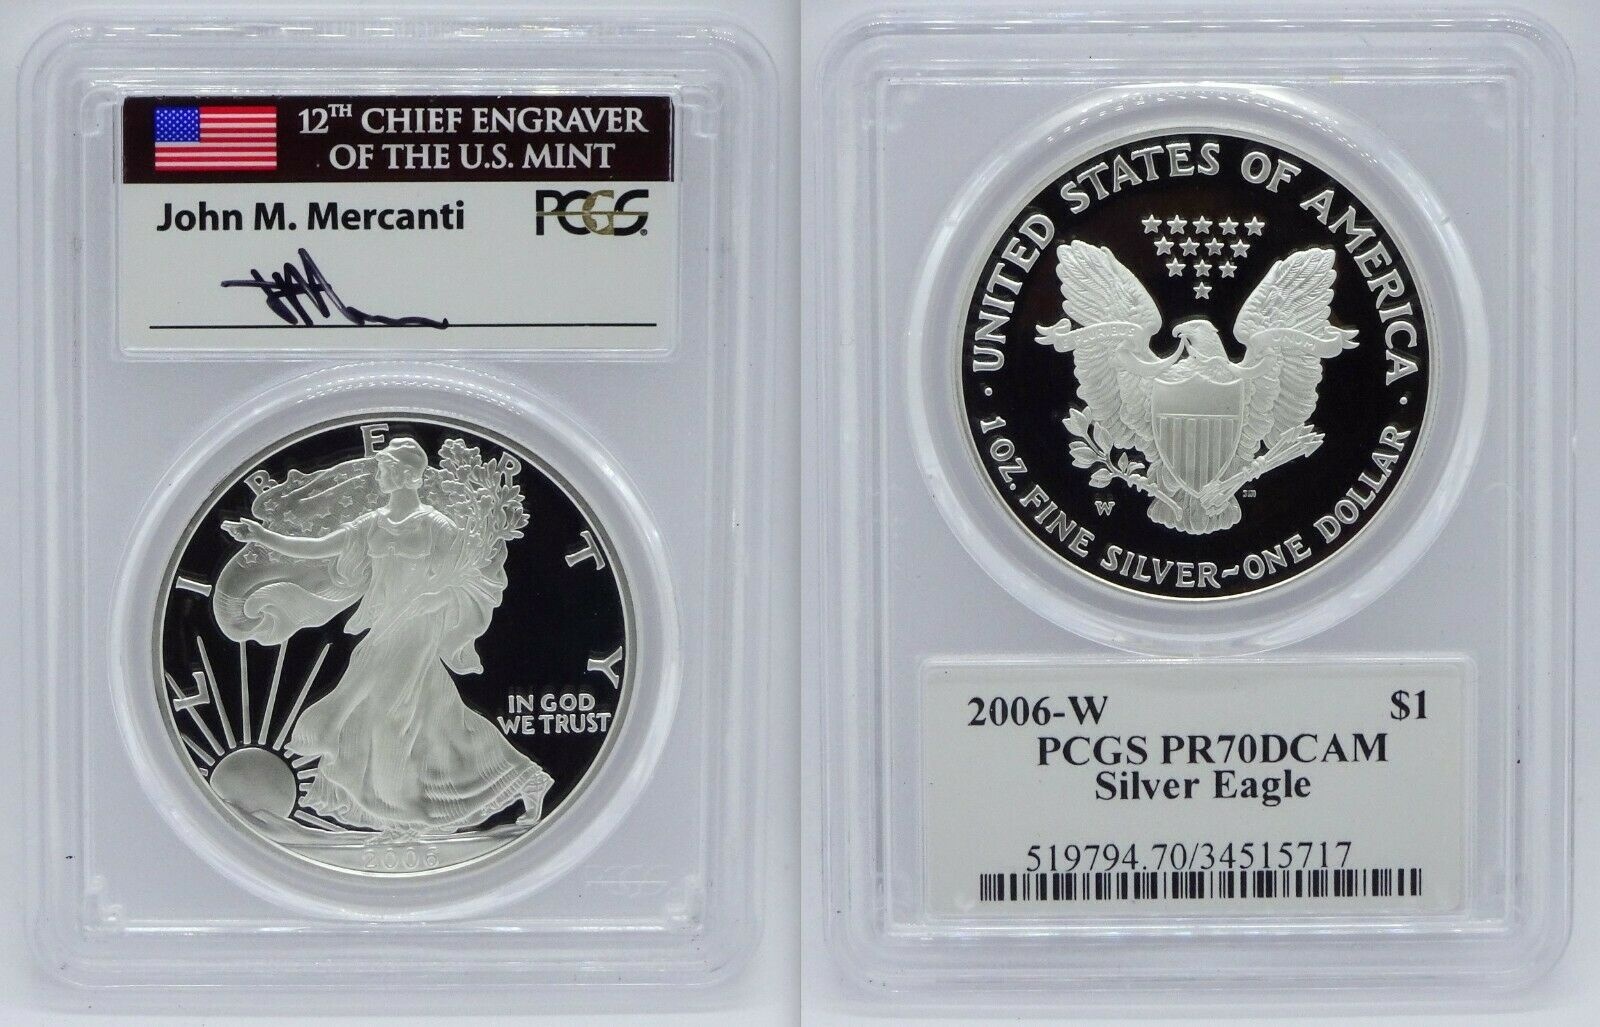  アンティークコイン コイン 金貨 銀貨  [送料無料] 2006-W Proof American Silver Eagle PCGS PR70DCAM Mercanti Signed Flag Label